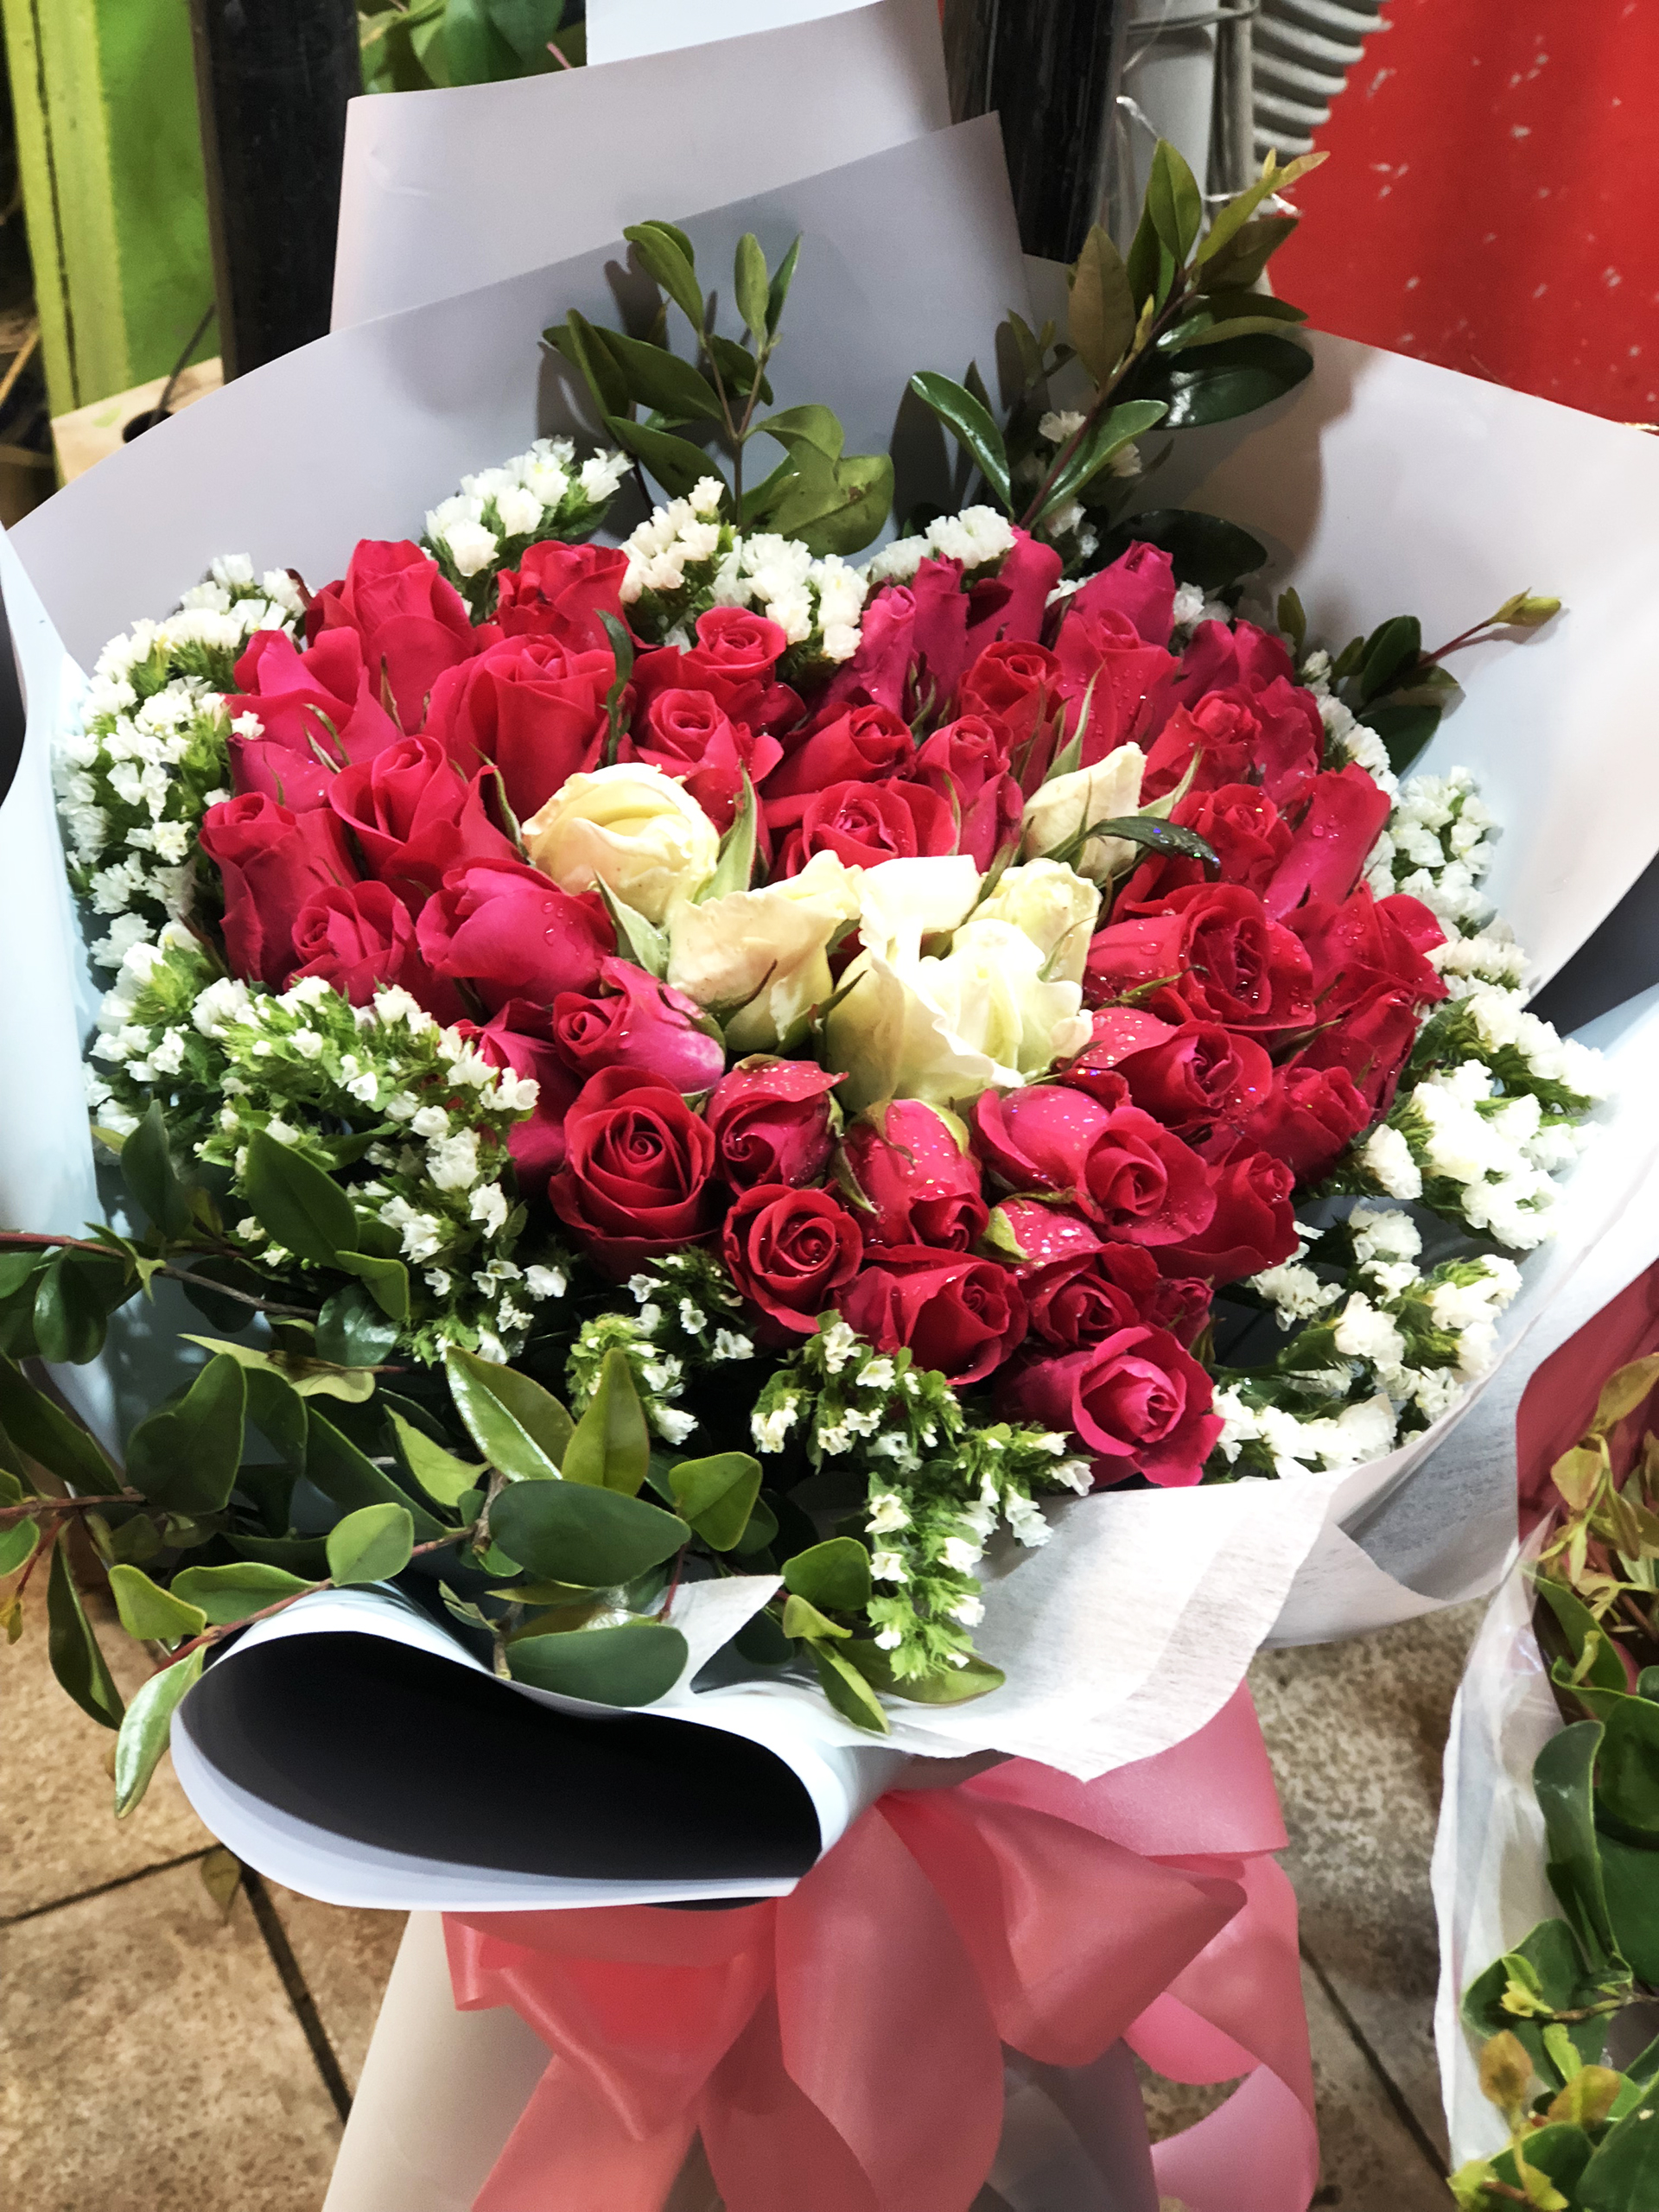 Hãy đem đến cho người yêu của bạn một món quà ngọt ngào như hoa Valentine. Những bông hoa này sẽ khiến người yêu của bạn cảm thấy hạnh phúc và yêu thương hơn. Hãy để những bông hoa tượng trưng cho tình yêu của bạn trỗi dậy trong ngày lễ tình yêu này.